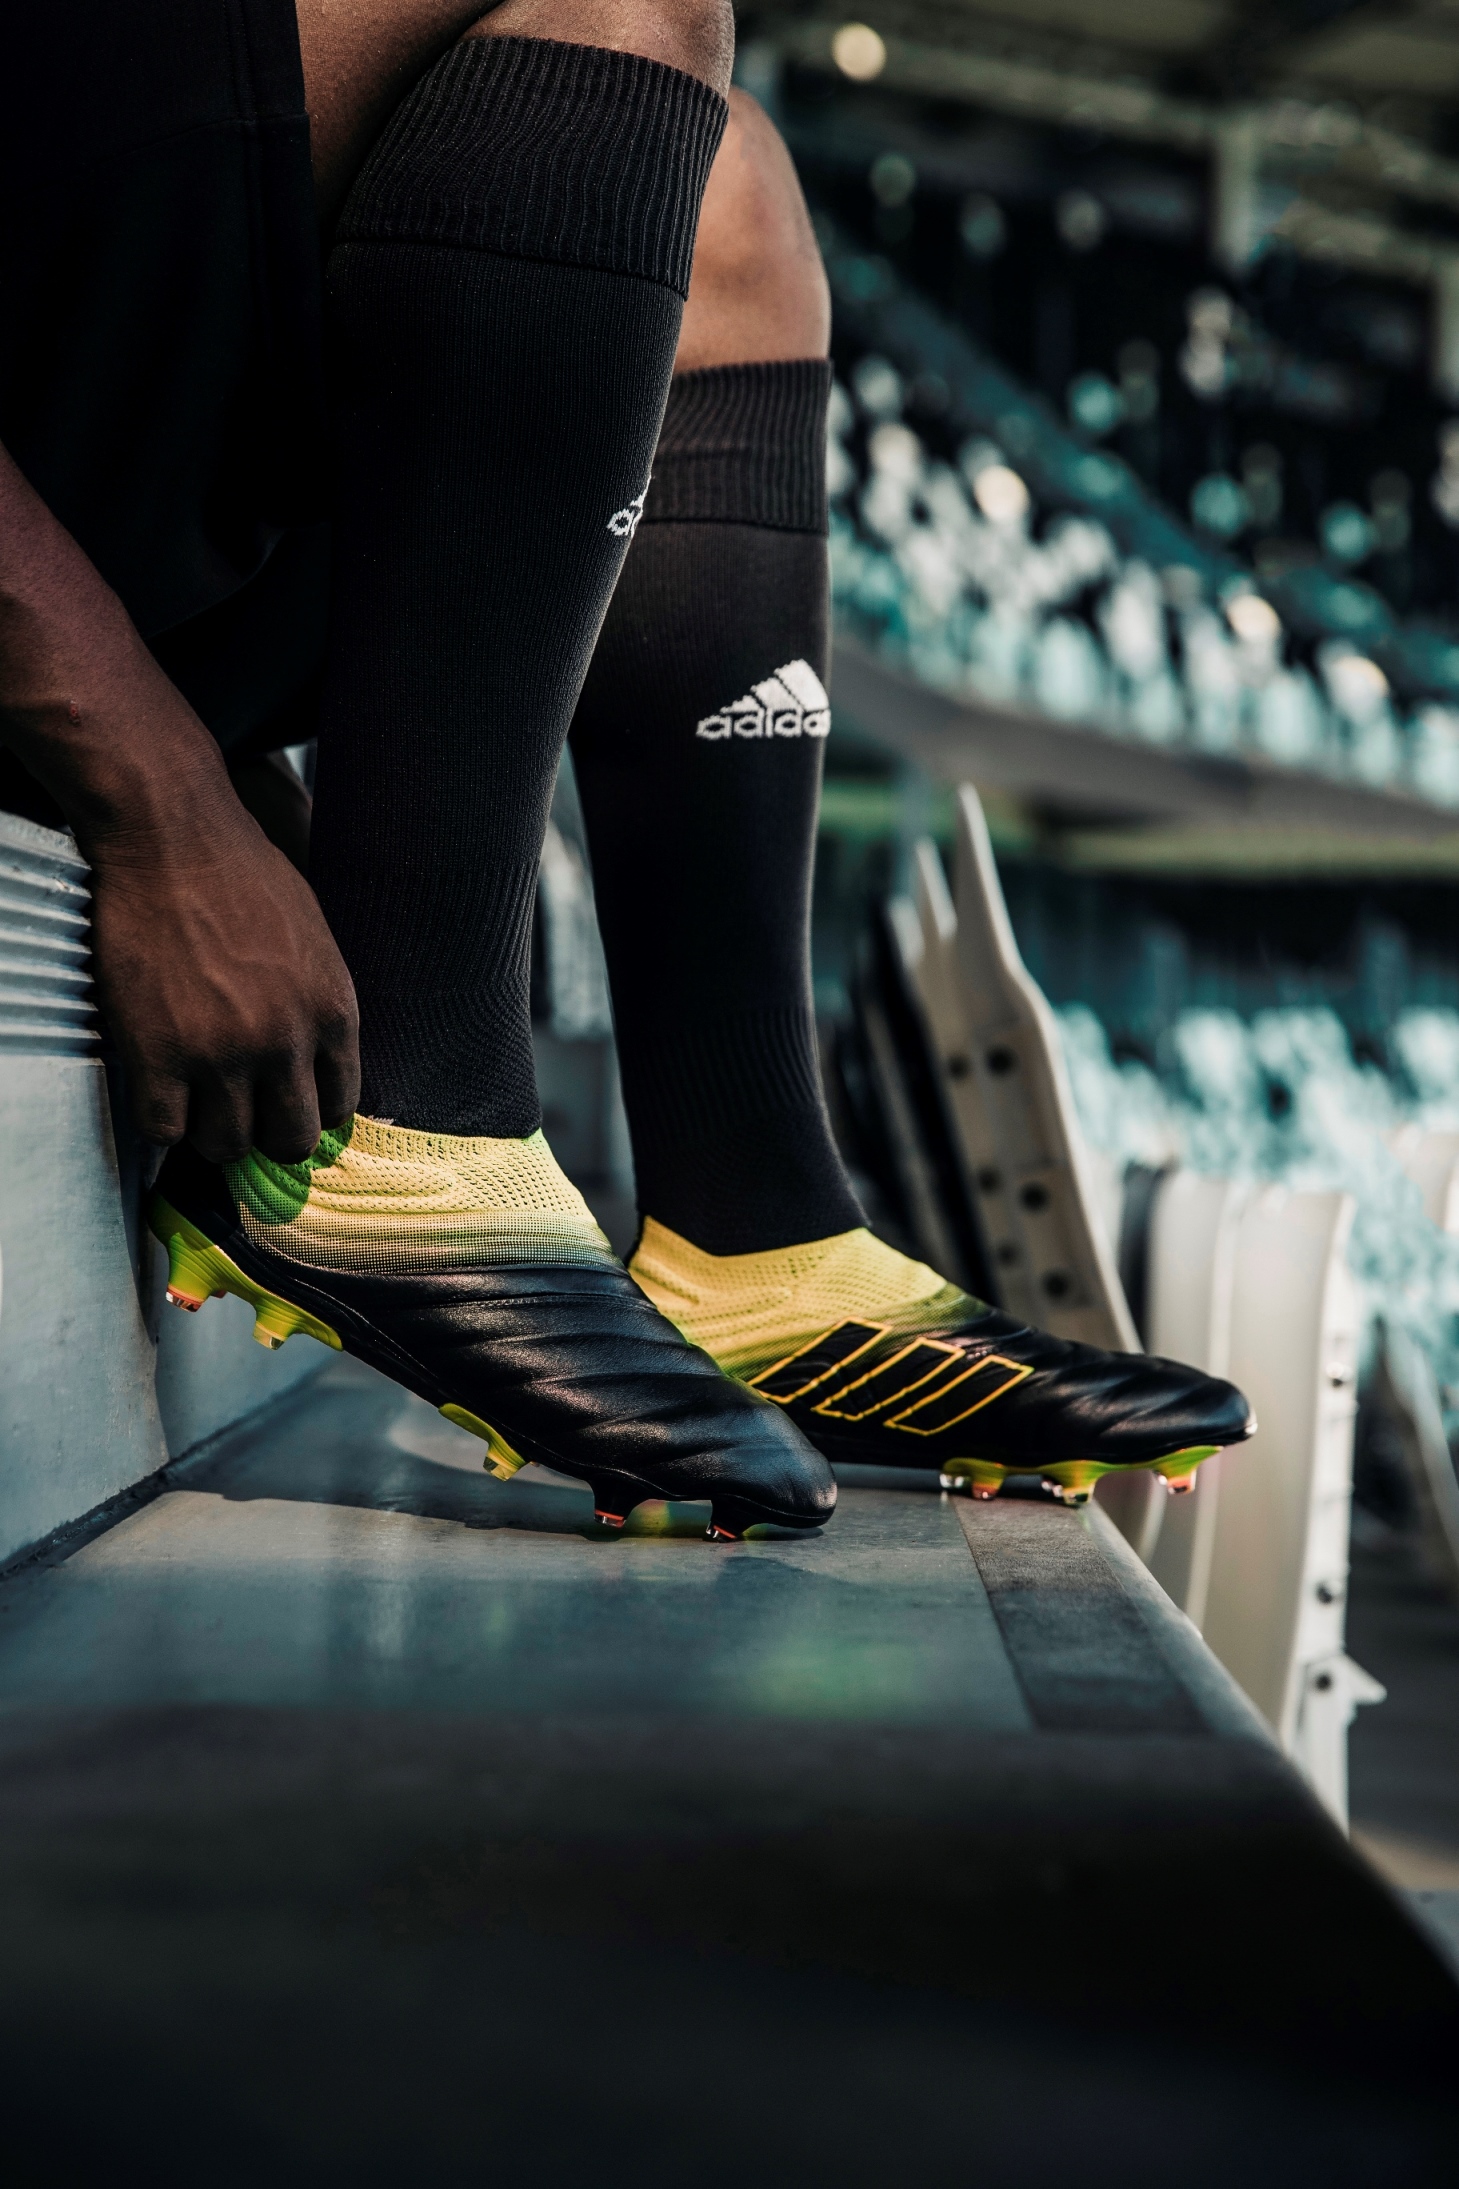 Derechos de autor Vislumbrar Dentro aaprevista - Adidas Football lanza la colección “Exhibit Pack”